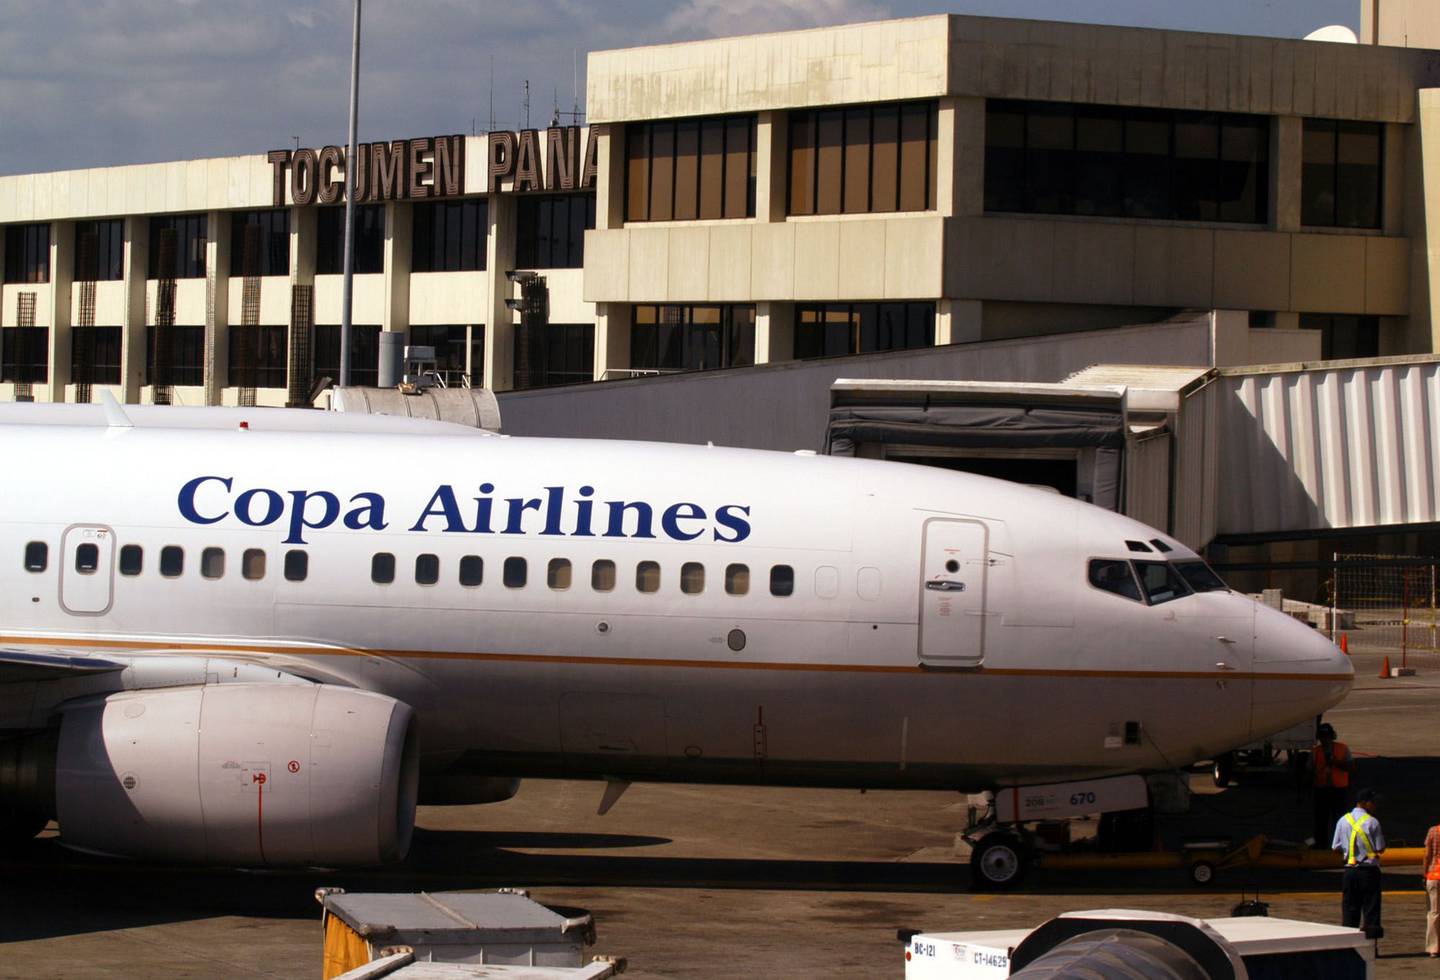 Copa Airlines es subsidiaria de Copa Holdings S.A. y miembro de la red global de aerolíneas Star Alliance.